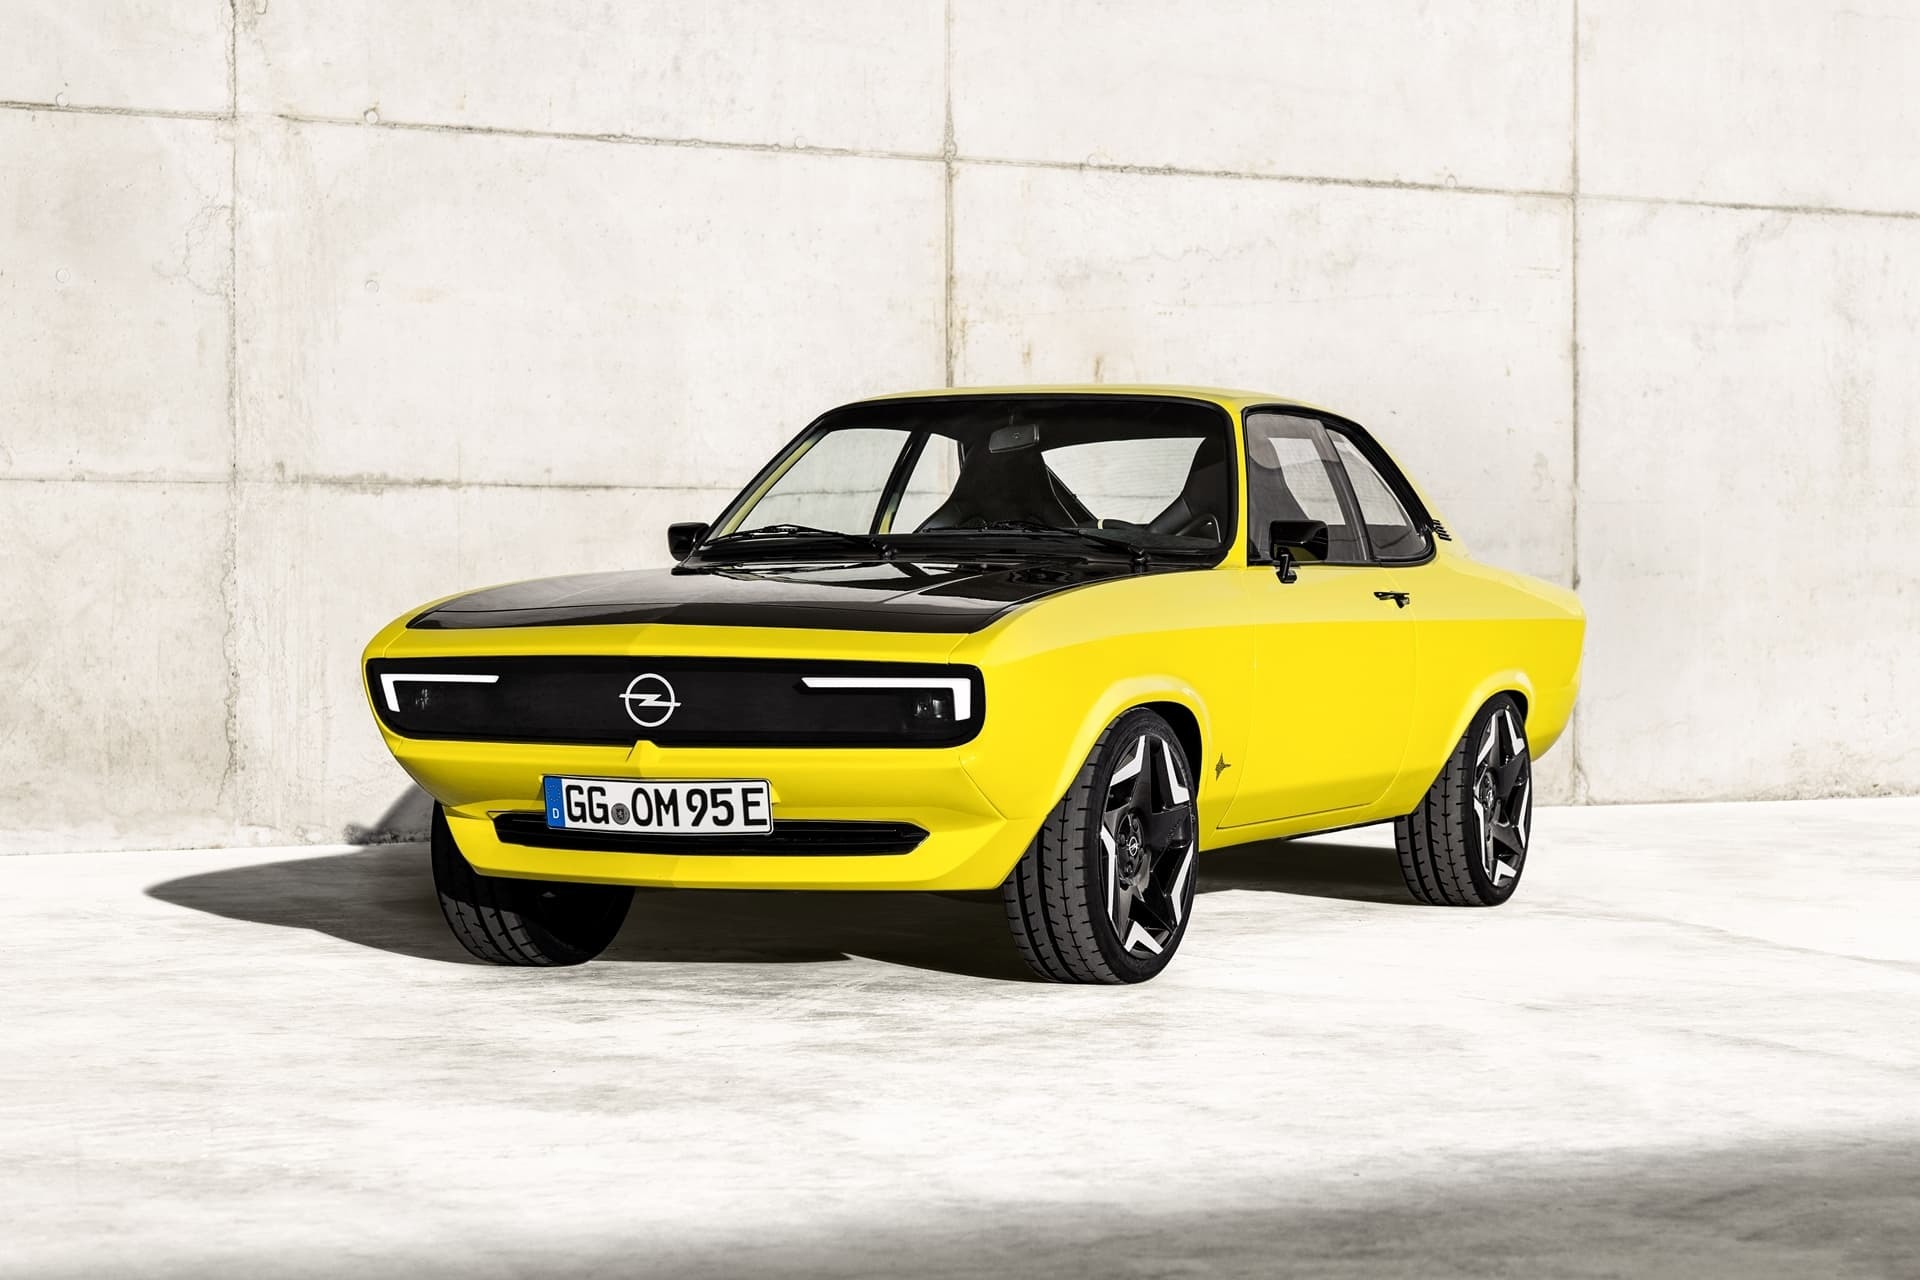 Opel electrificó este Manta antiguo